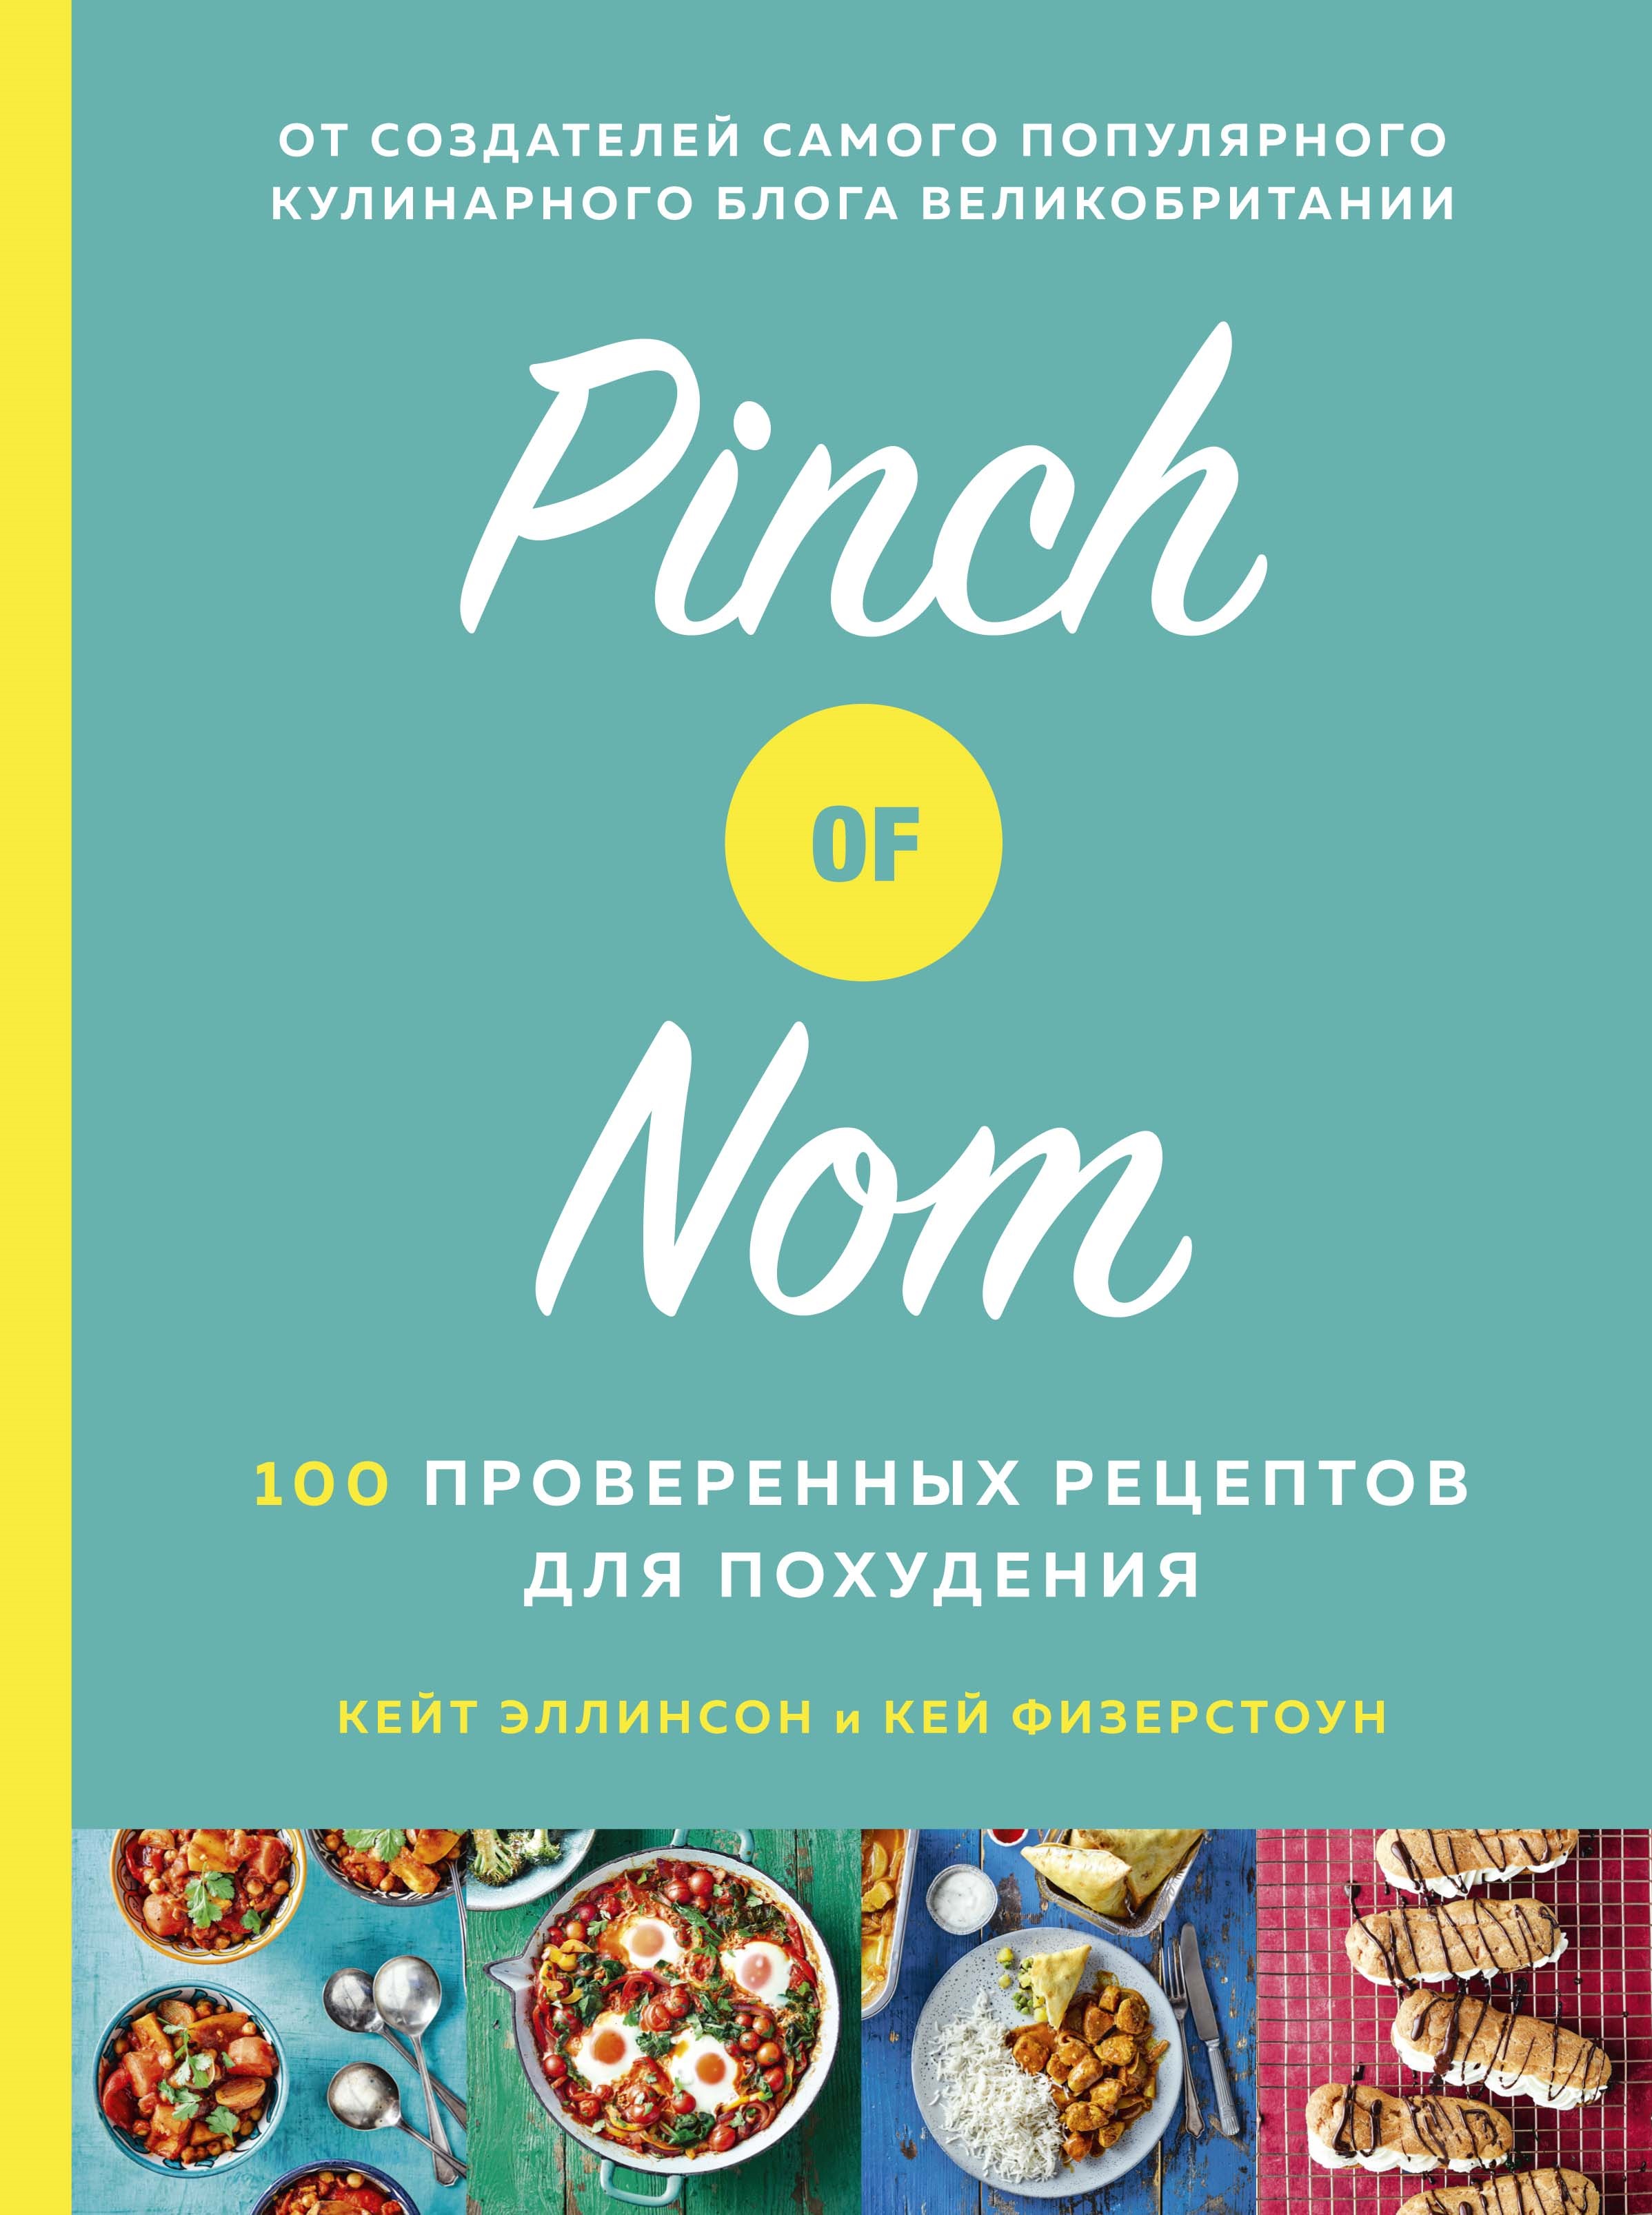 Физерстоун Кей Pinch of Nom: 100 проверенных рецептов для похудения allinson kate физерстоун кей pinch of nom quick